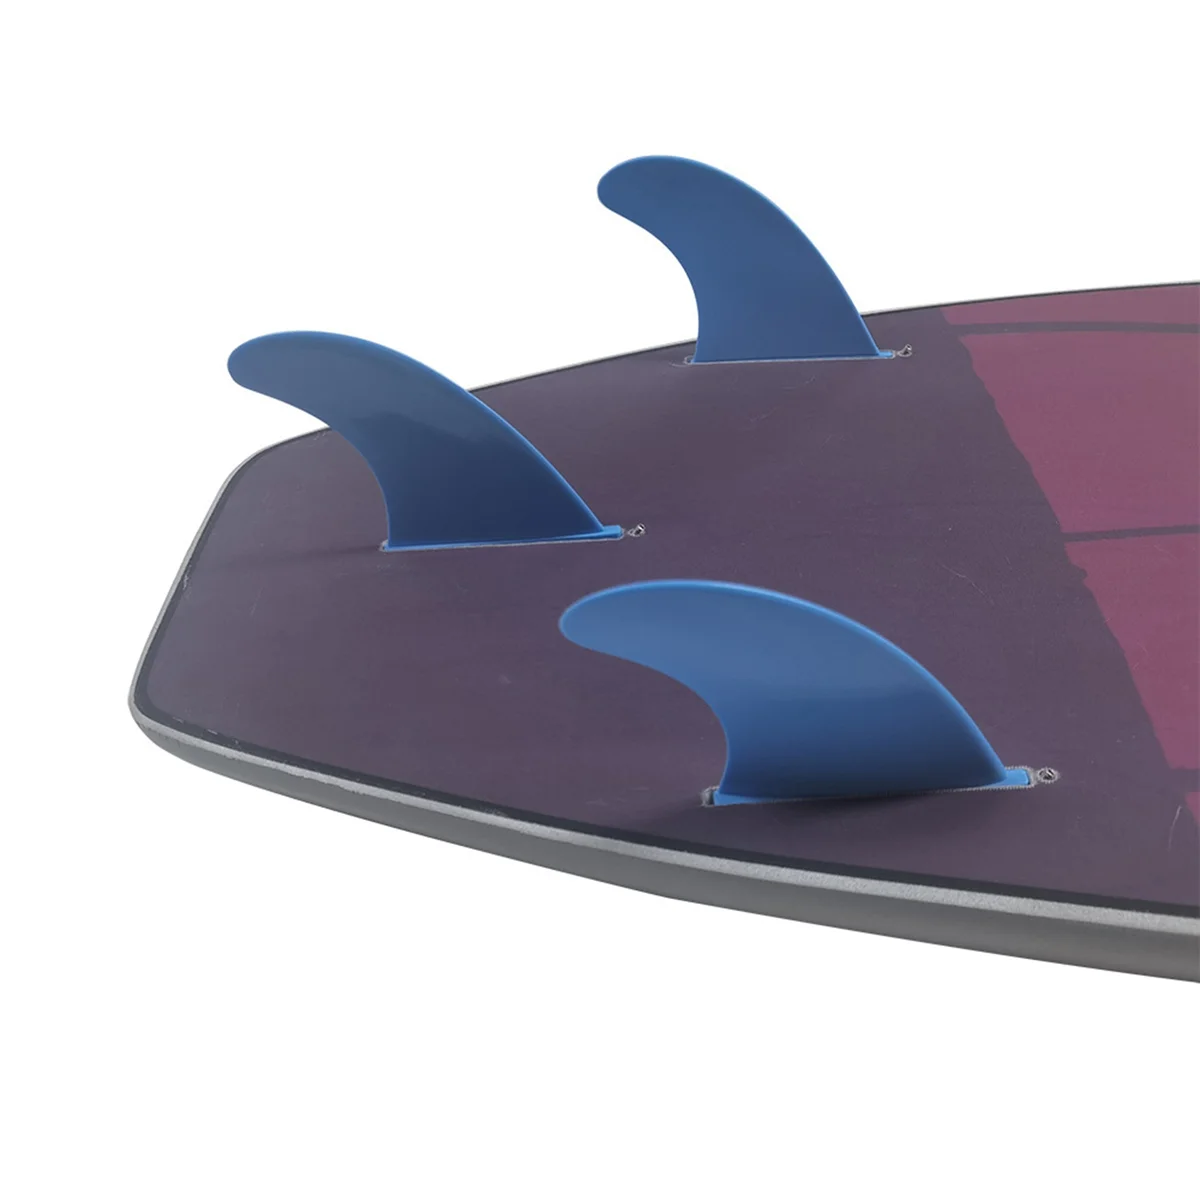 G5 3 шт./компл. Аксессуары для гребного Серфинга Подруливающие устройства для ЛАСТ Surf Single Tab Propulseur Аксессуары для Серфинга